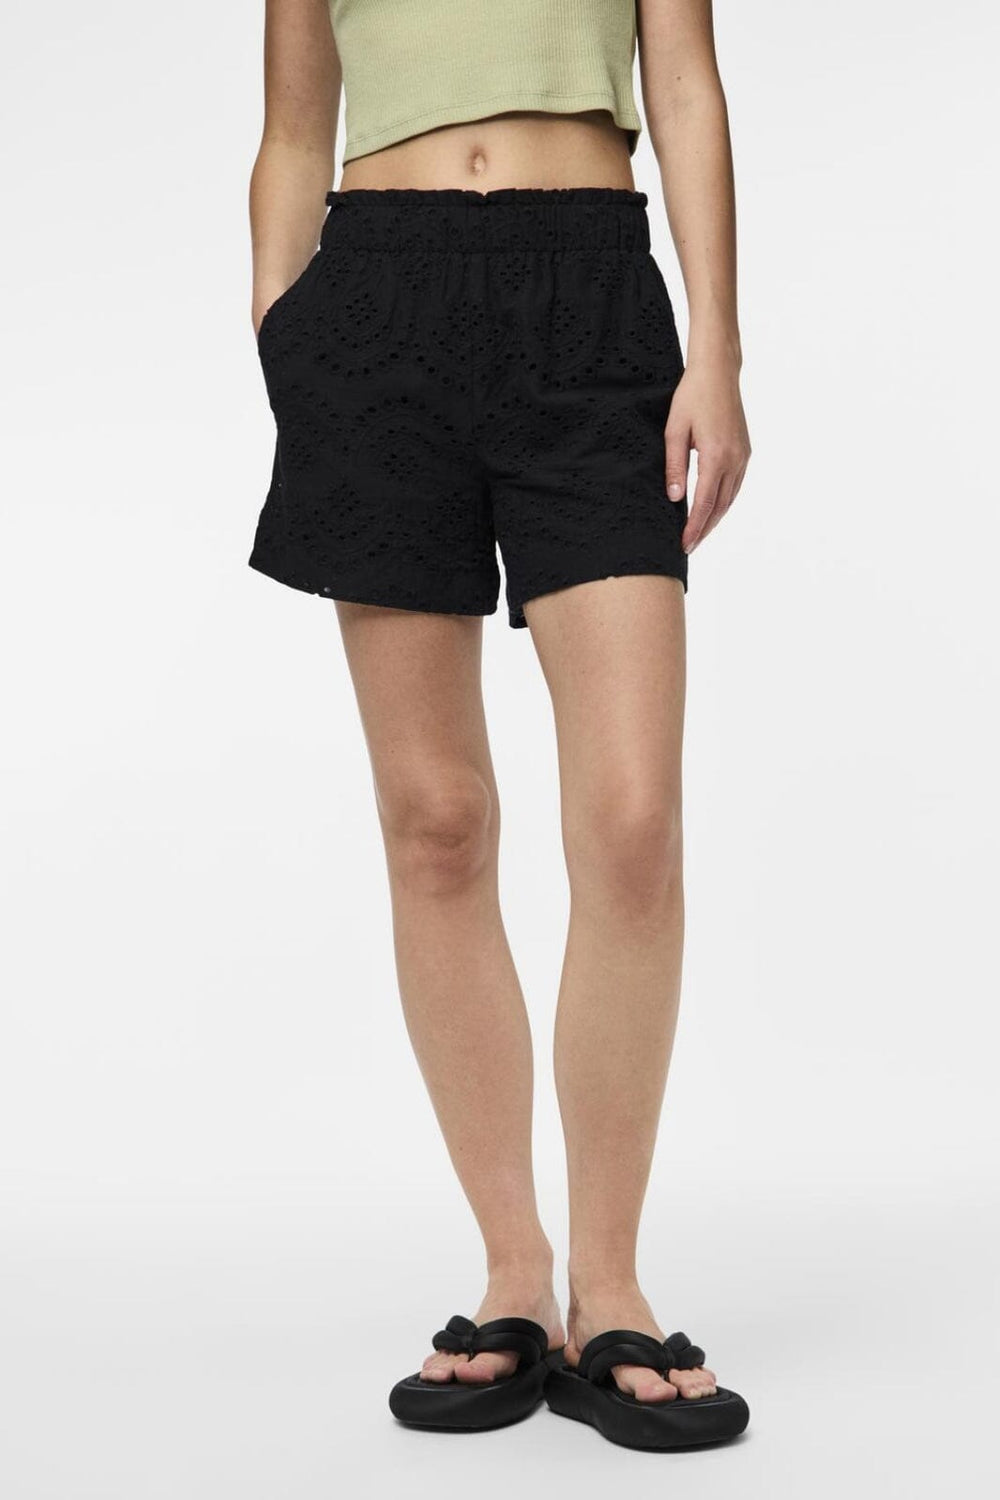 Pieces - Pcvilde Shorts - 4649435 Black Shorts 